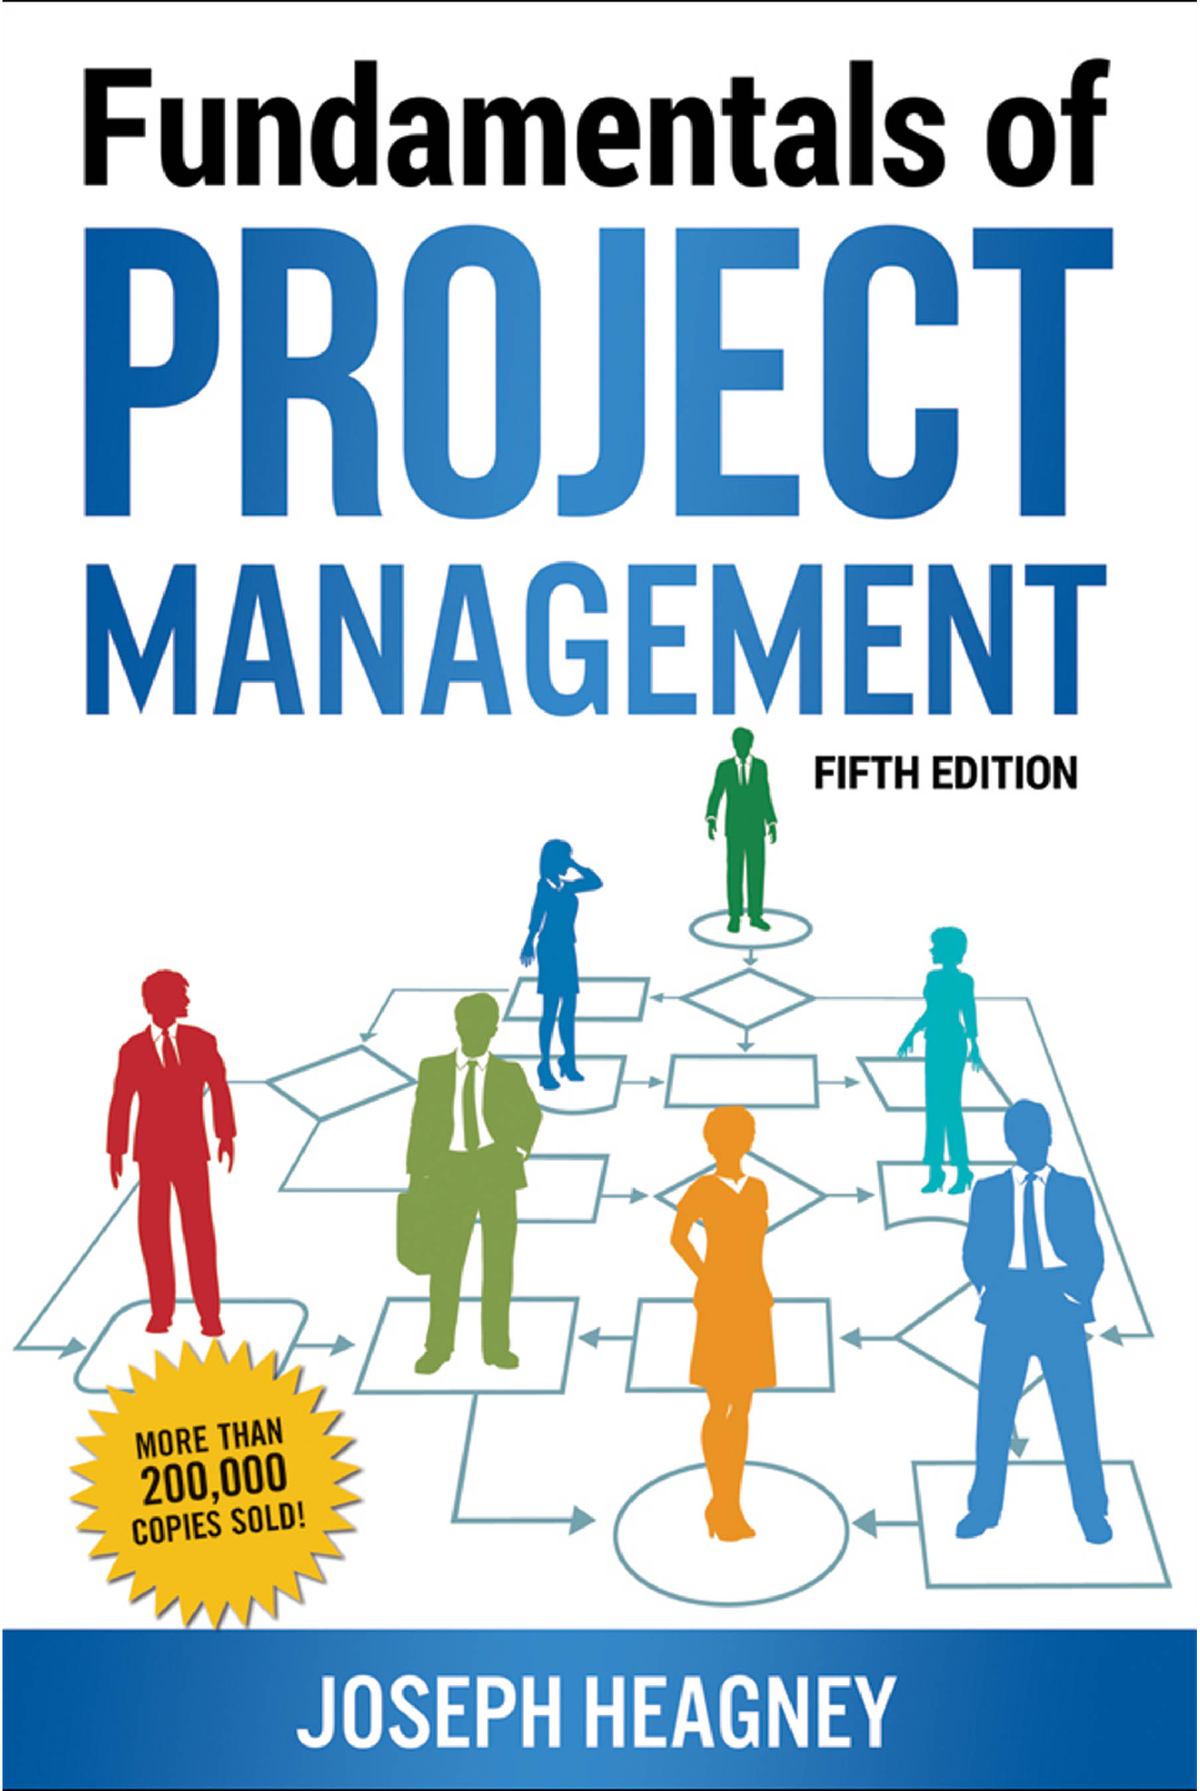 project management fundamentals essay